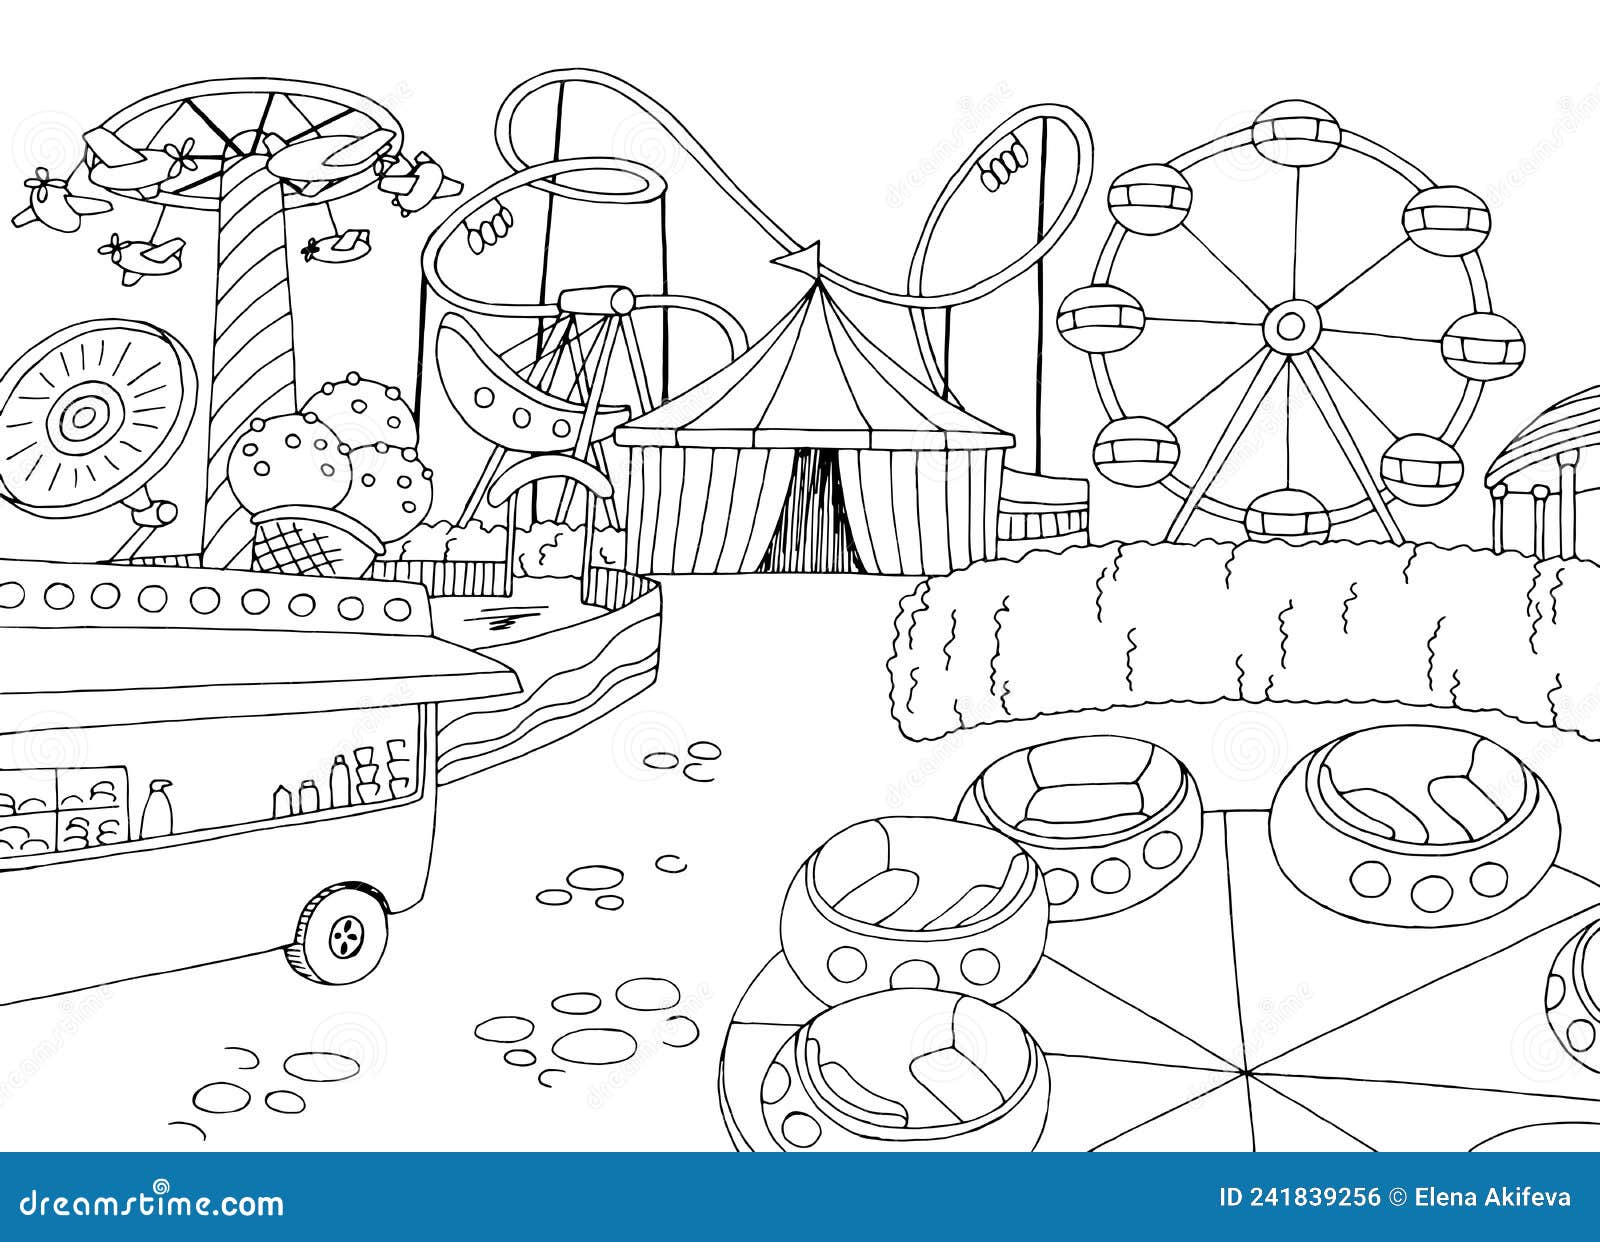 Amusement Park Landscape Graphic Black White Sketch Illustration Vector ...